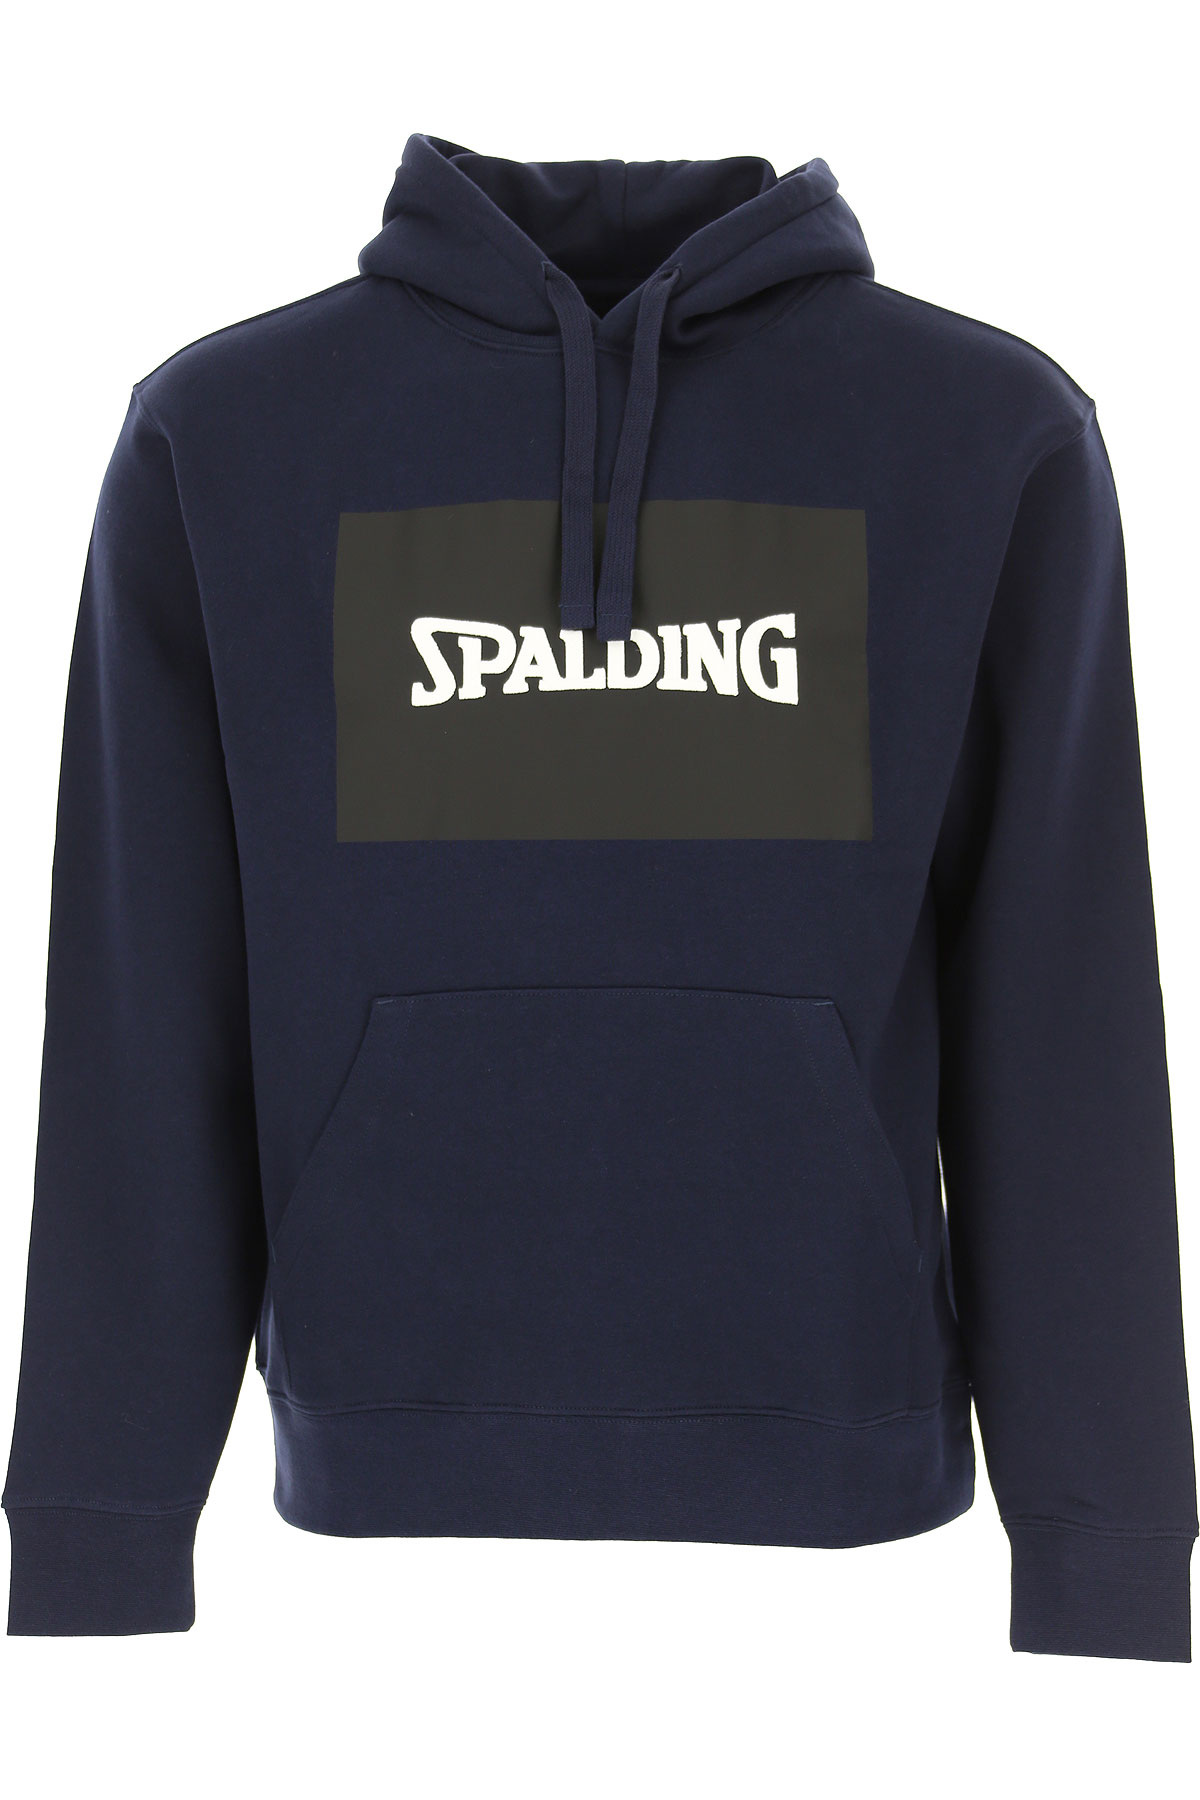 Spalding Sweatshirt für Herren, Kapuzenpulli, Hoodie, Sweats Günstig im Sale, Marineblau, Baumwolle, 2017, L M XL XXL